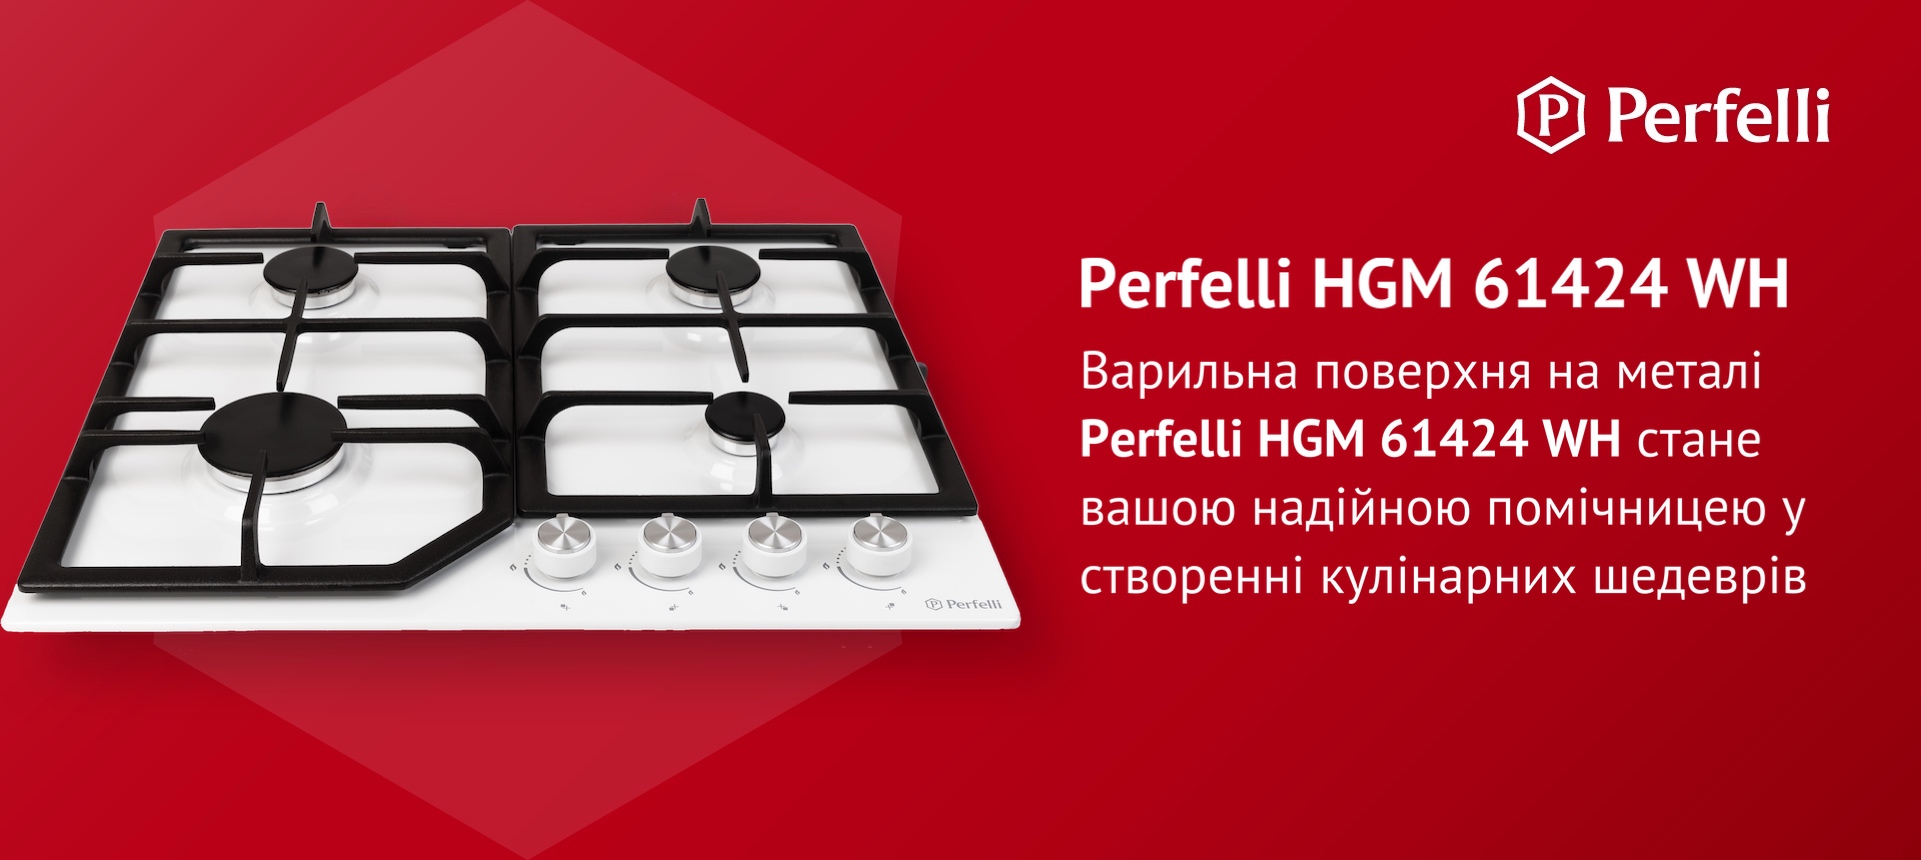 Варильна поверхня на металі Perfelli HGM 61424 WH стане вашою надійною помічницею у створенні кулінарних шедеврів